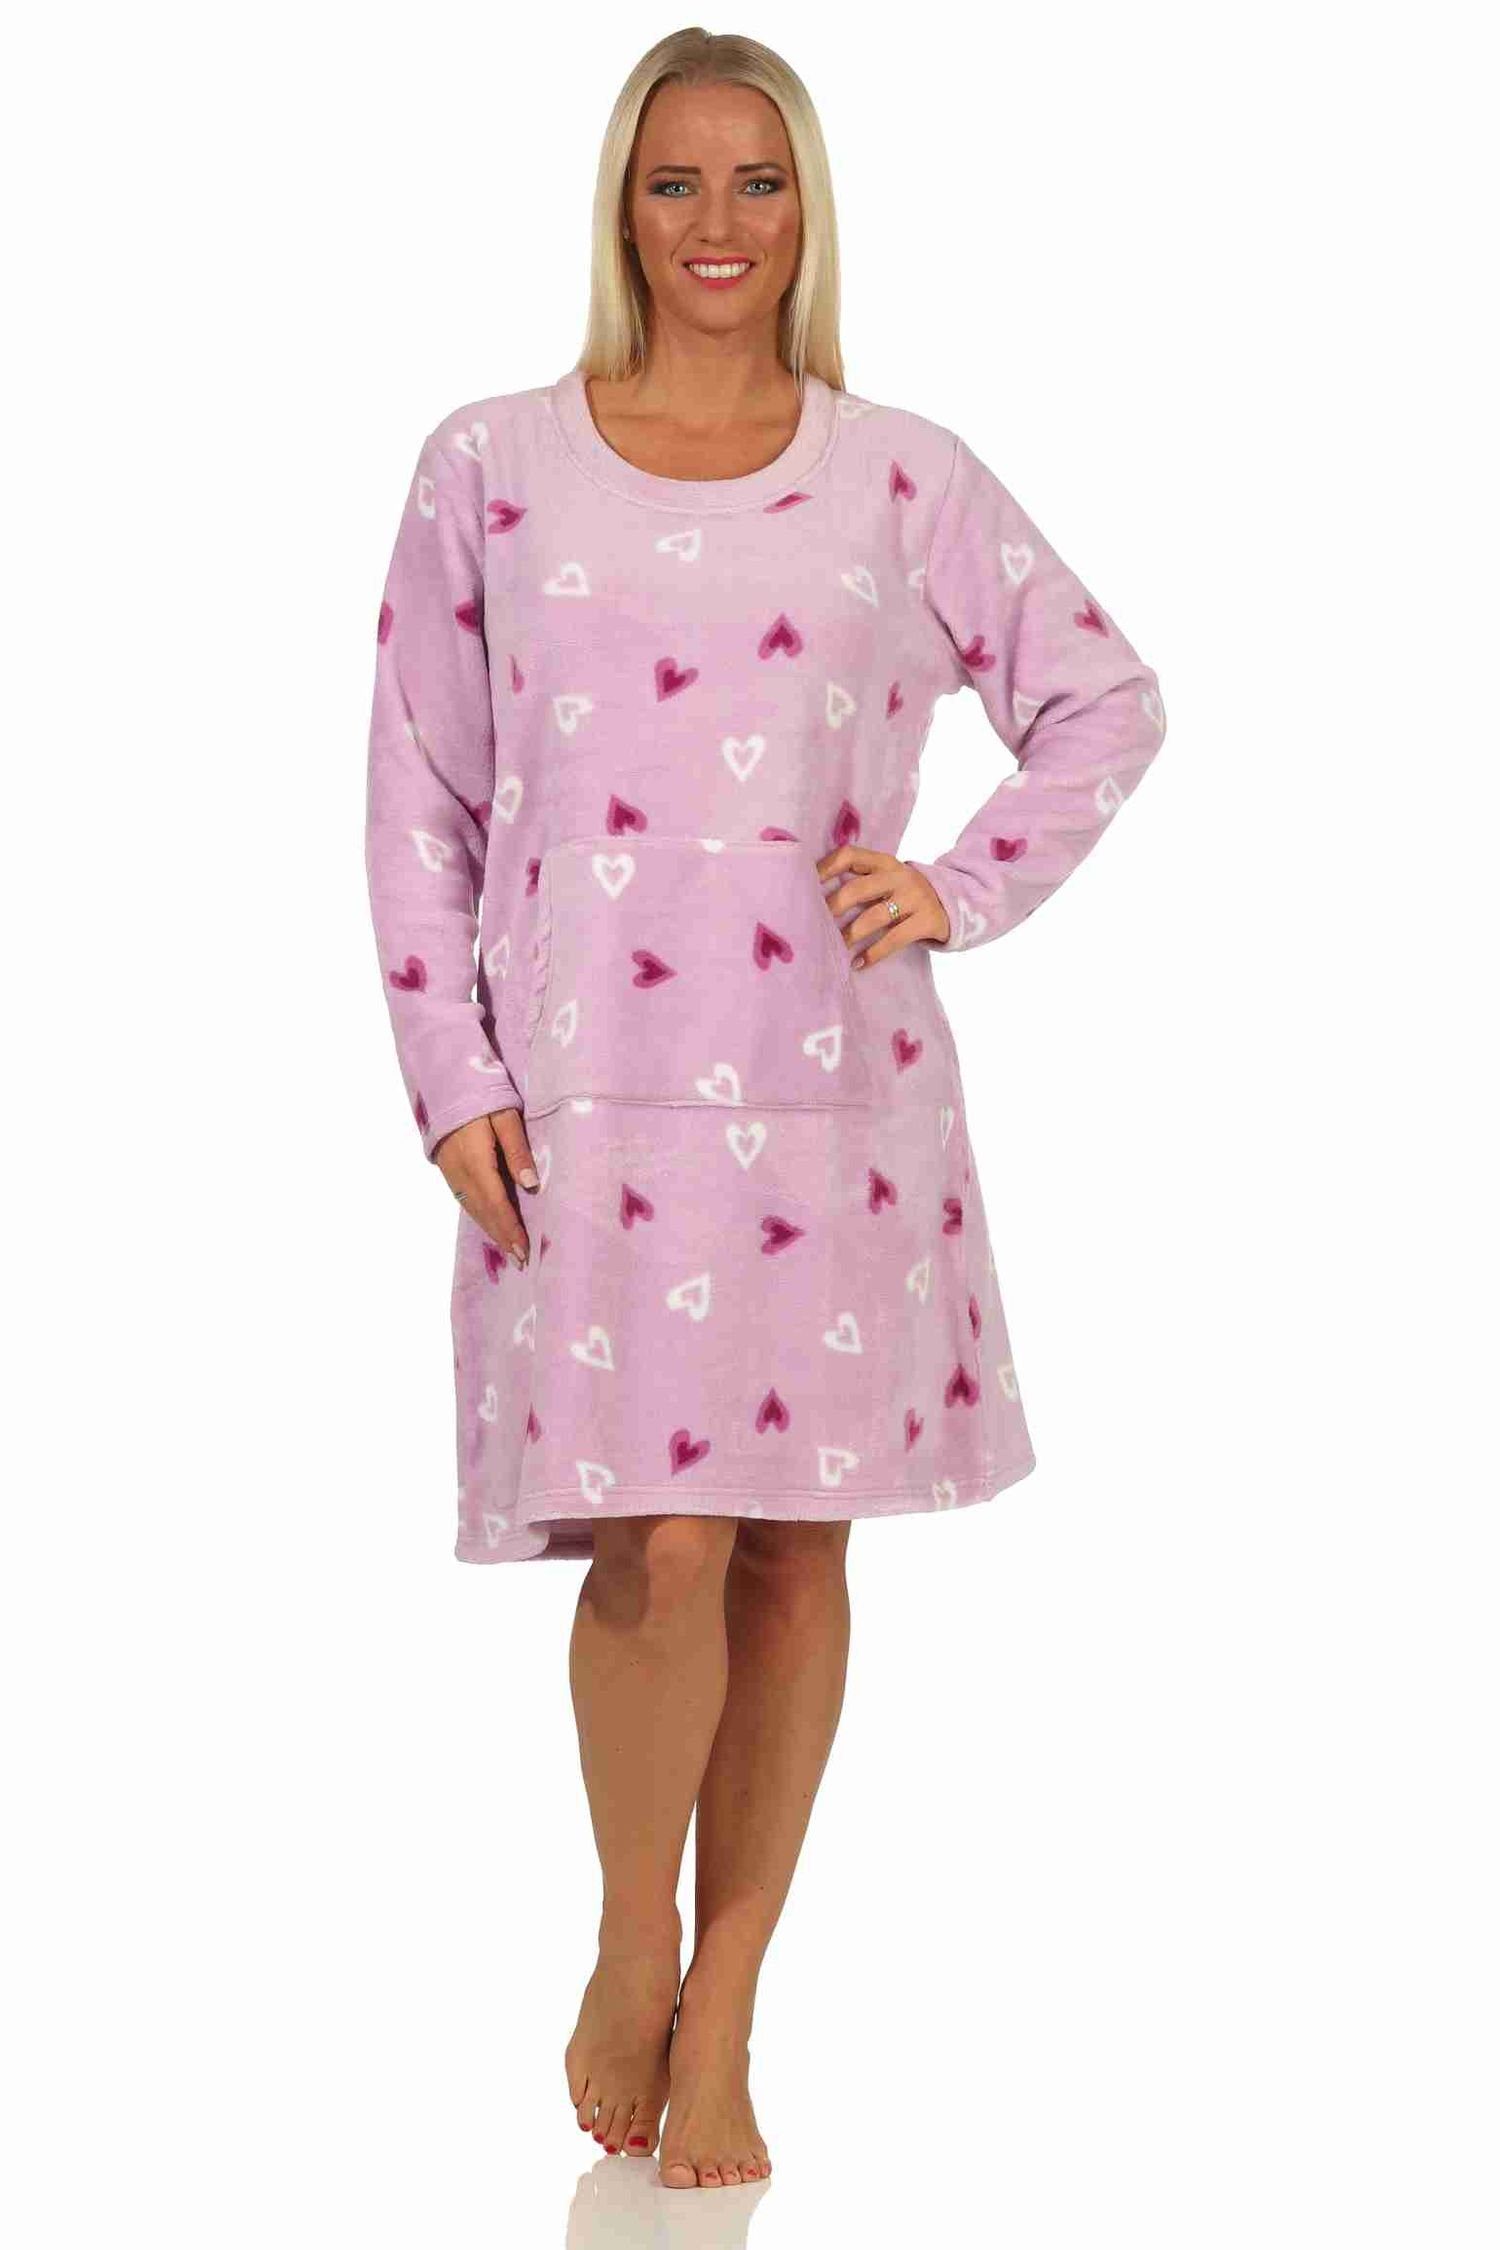 Normann Nachthemd Damen Nachthemd Hauskleid aus softem Coralfleece in Herz-Motiv Optik flieder